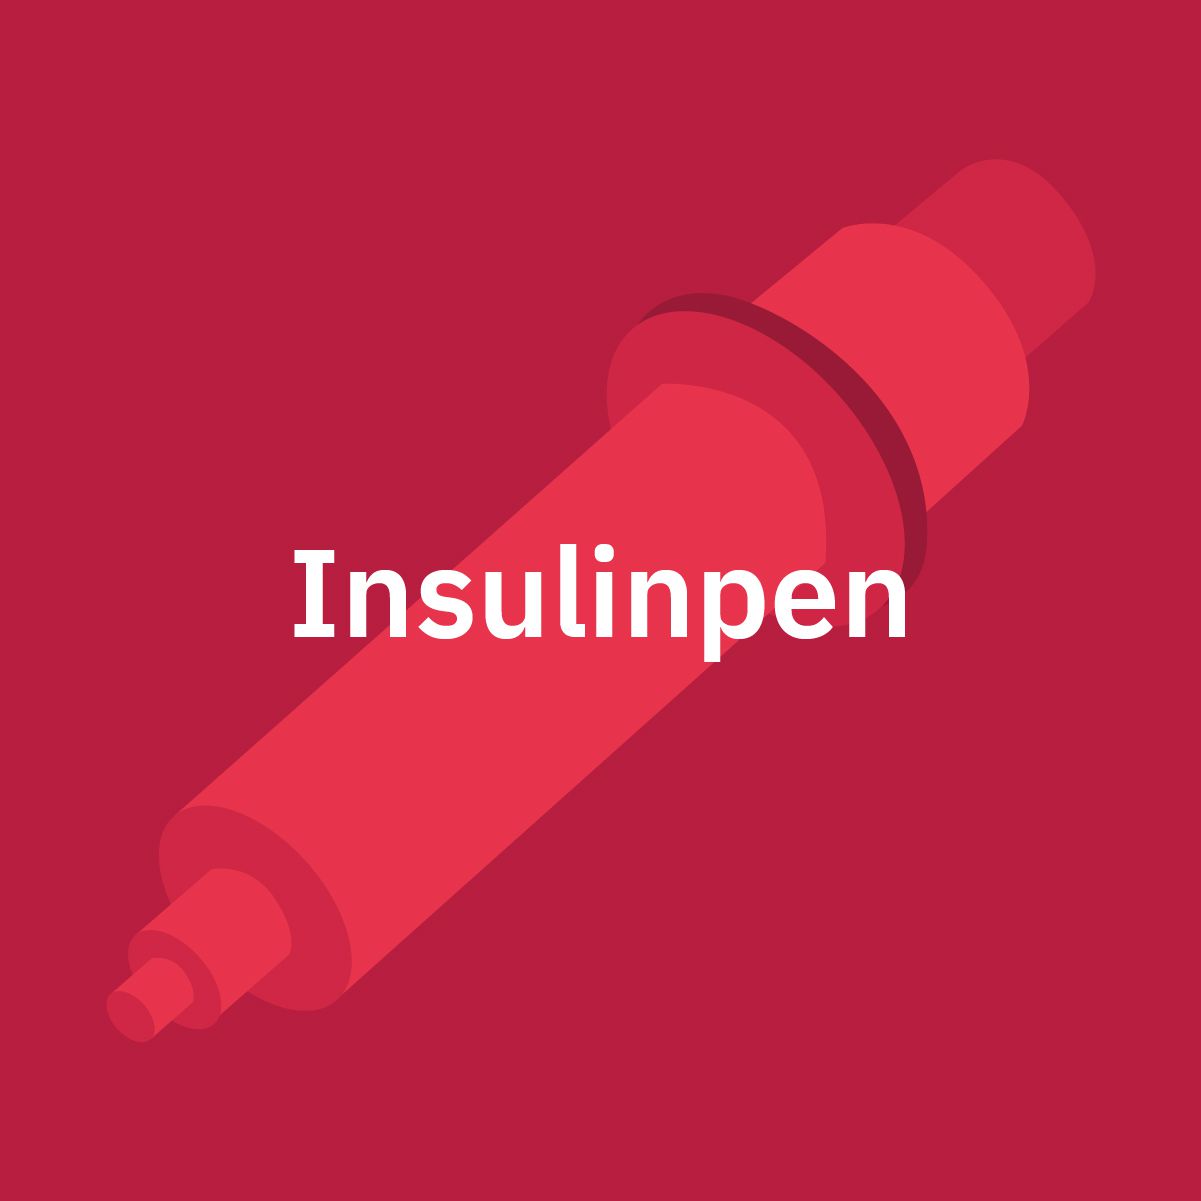 Insulinpen